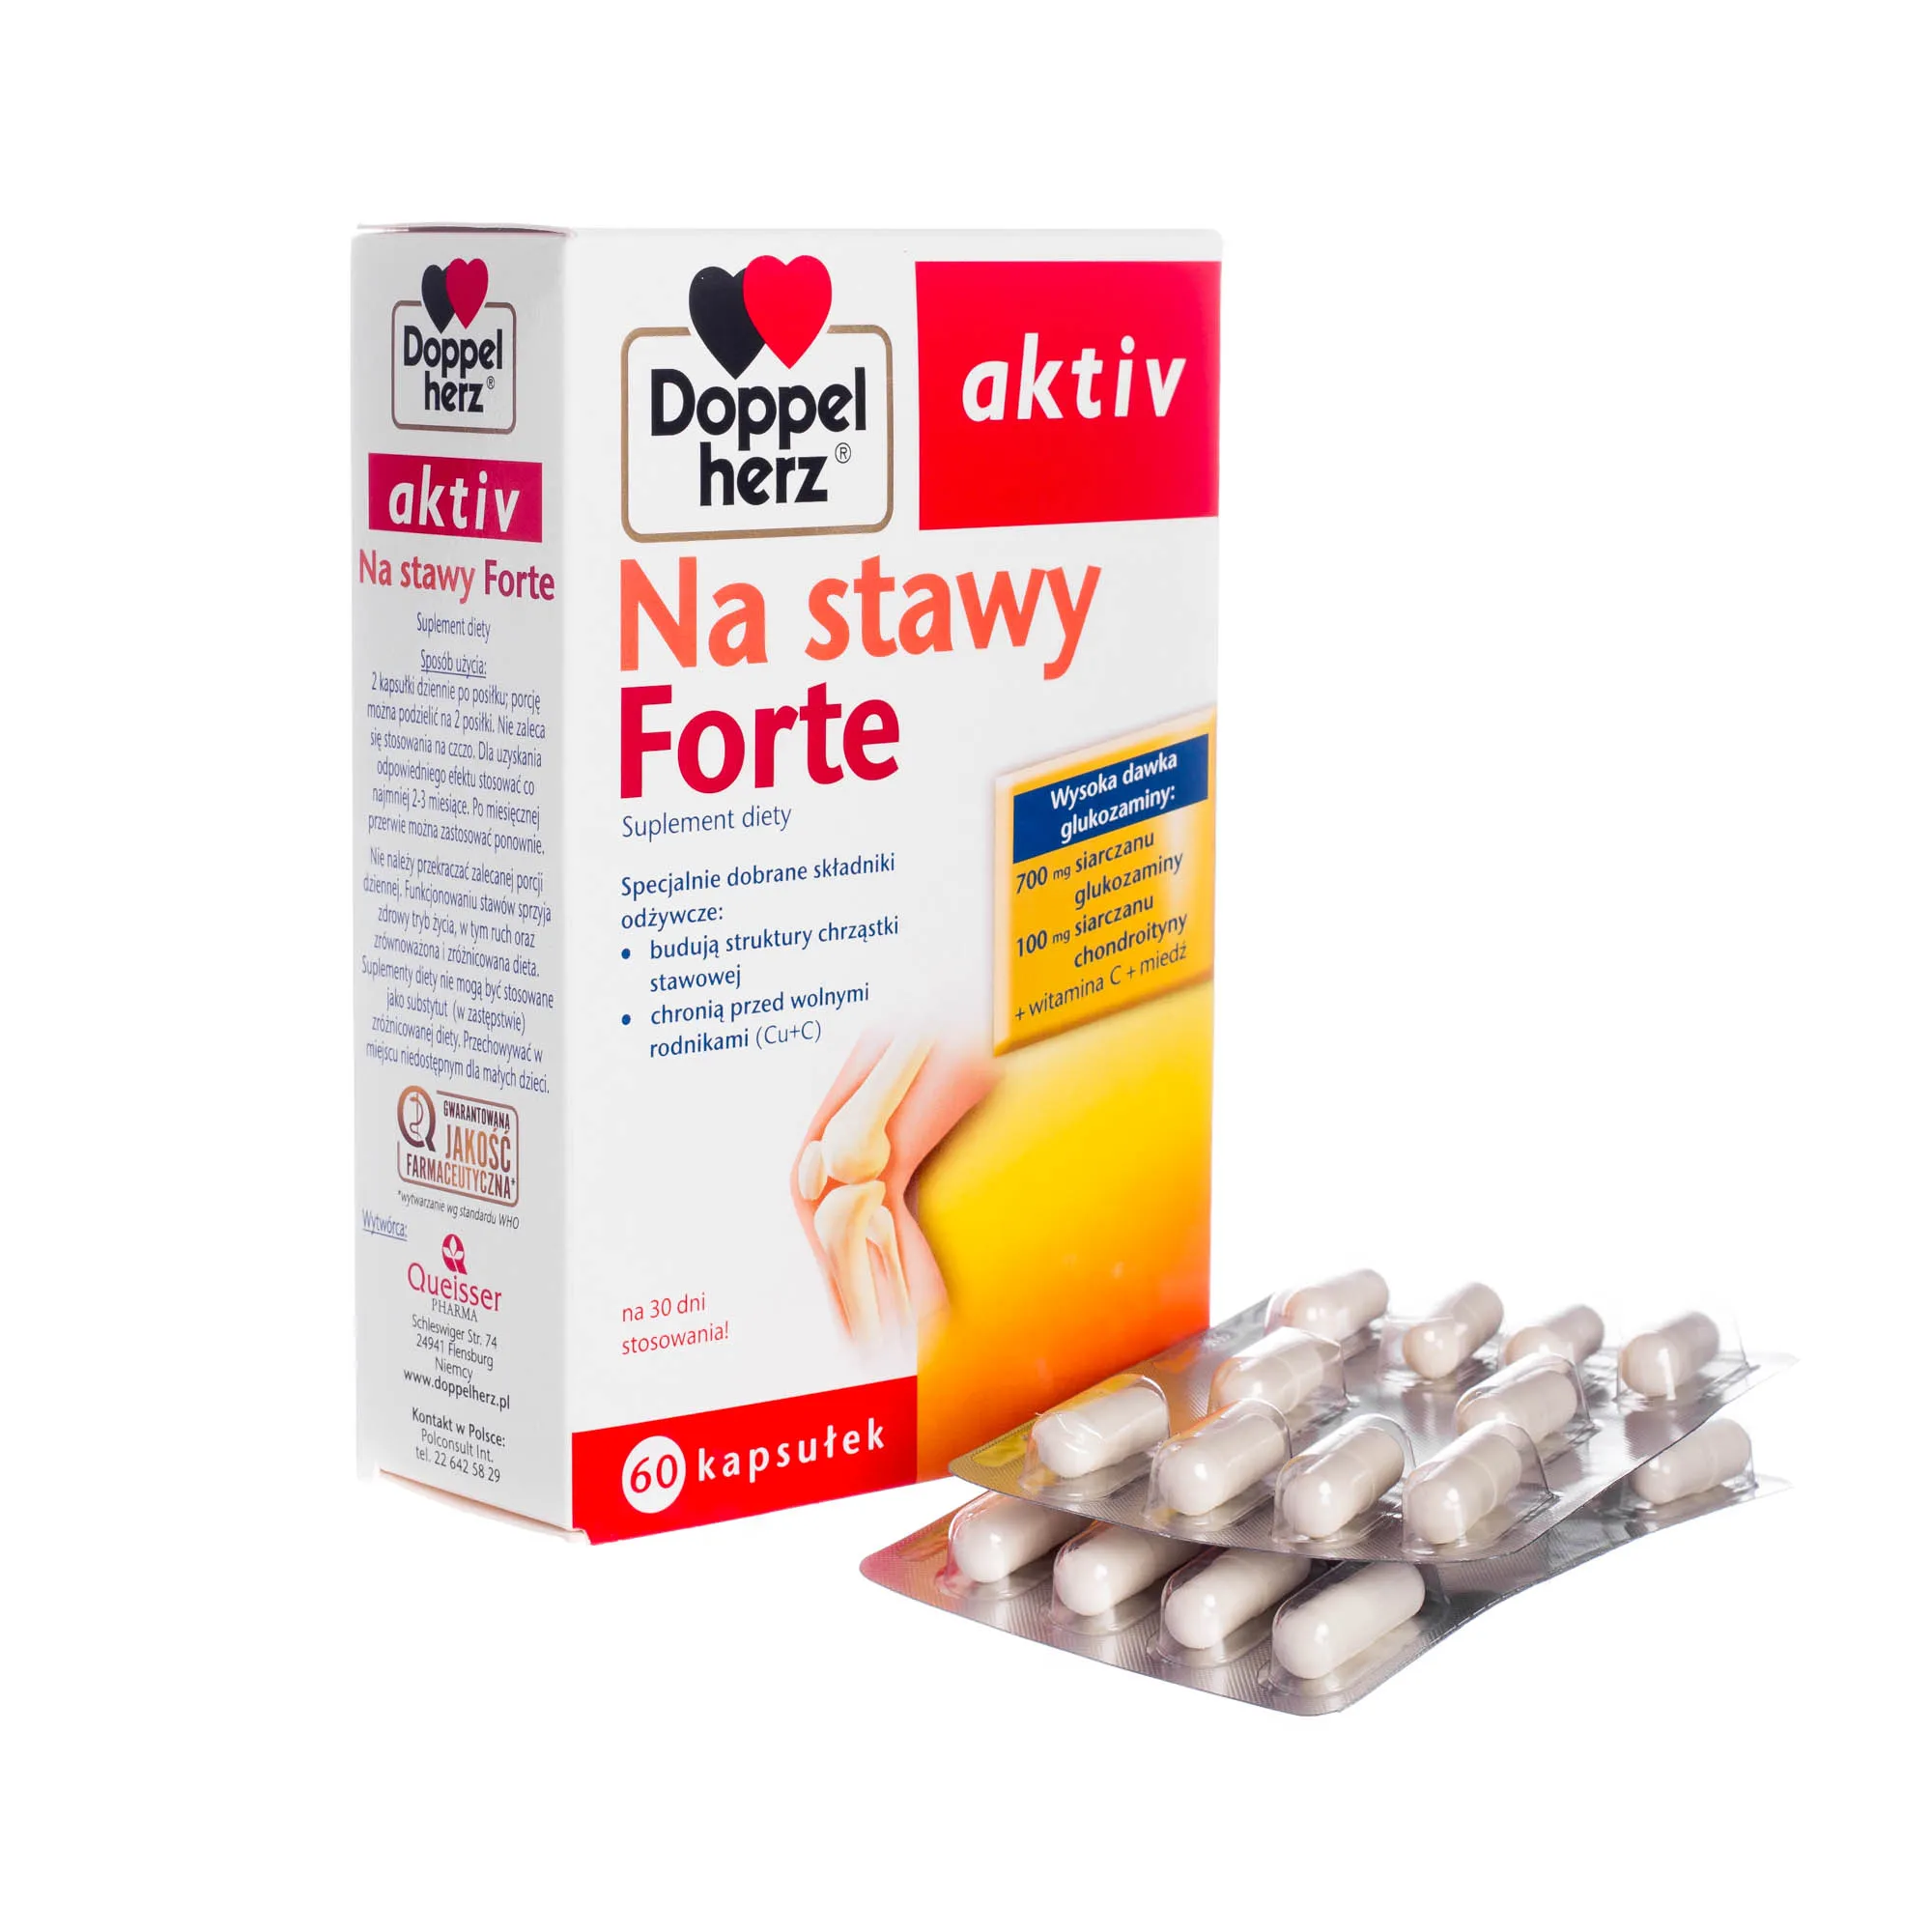 Doppelherz Active na Stawy Forte - suplement diety na stawy, 60 kapsułek